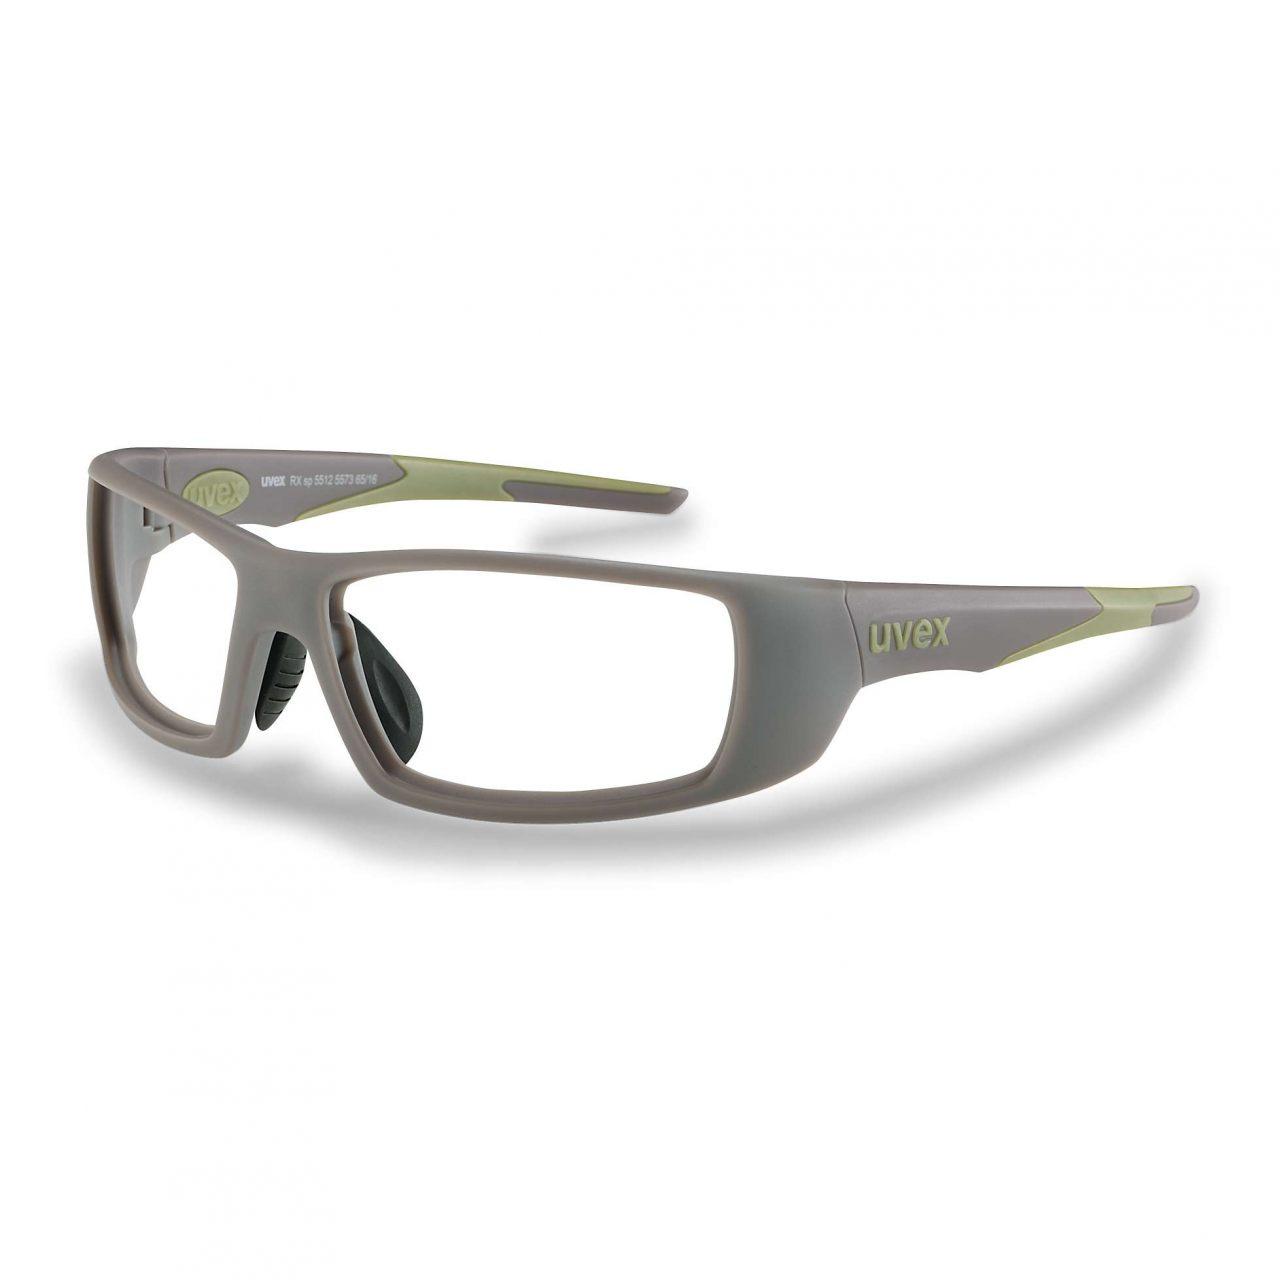 Корригирующие защитные очки uvex RX sp 5512, фото 1